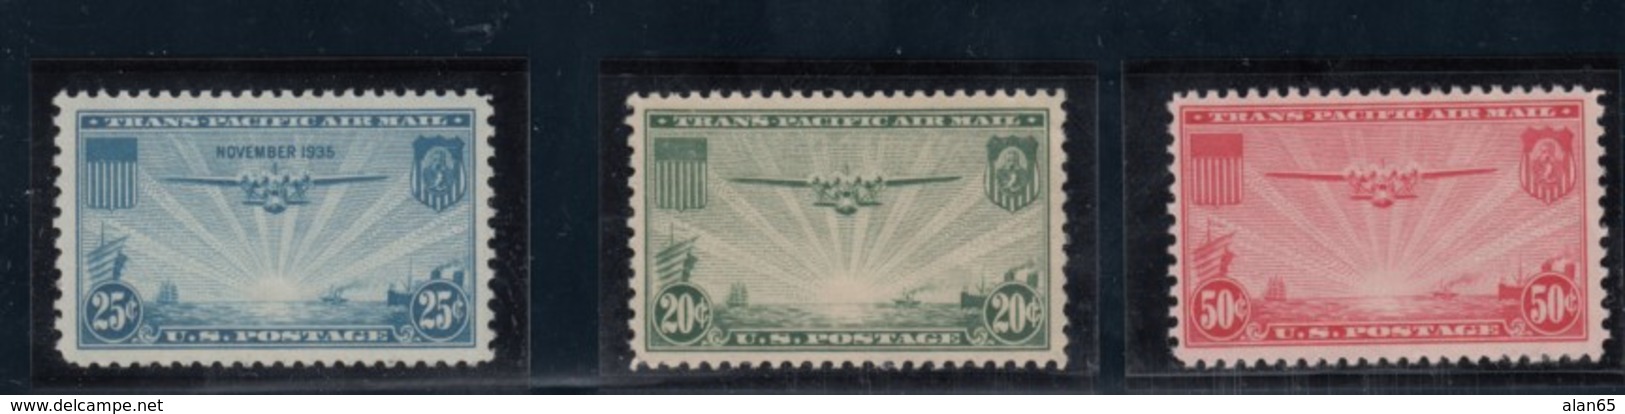 Lot Of 4 Mint US Air Mail Stamps, Sc#C20 25c #C21 20c, #C22 50c China Clipper Series, #C236c Air Mail 1935-38 Issues - 1b. 1918-1940 Nuevos